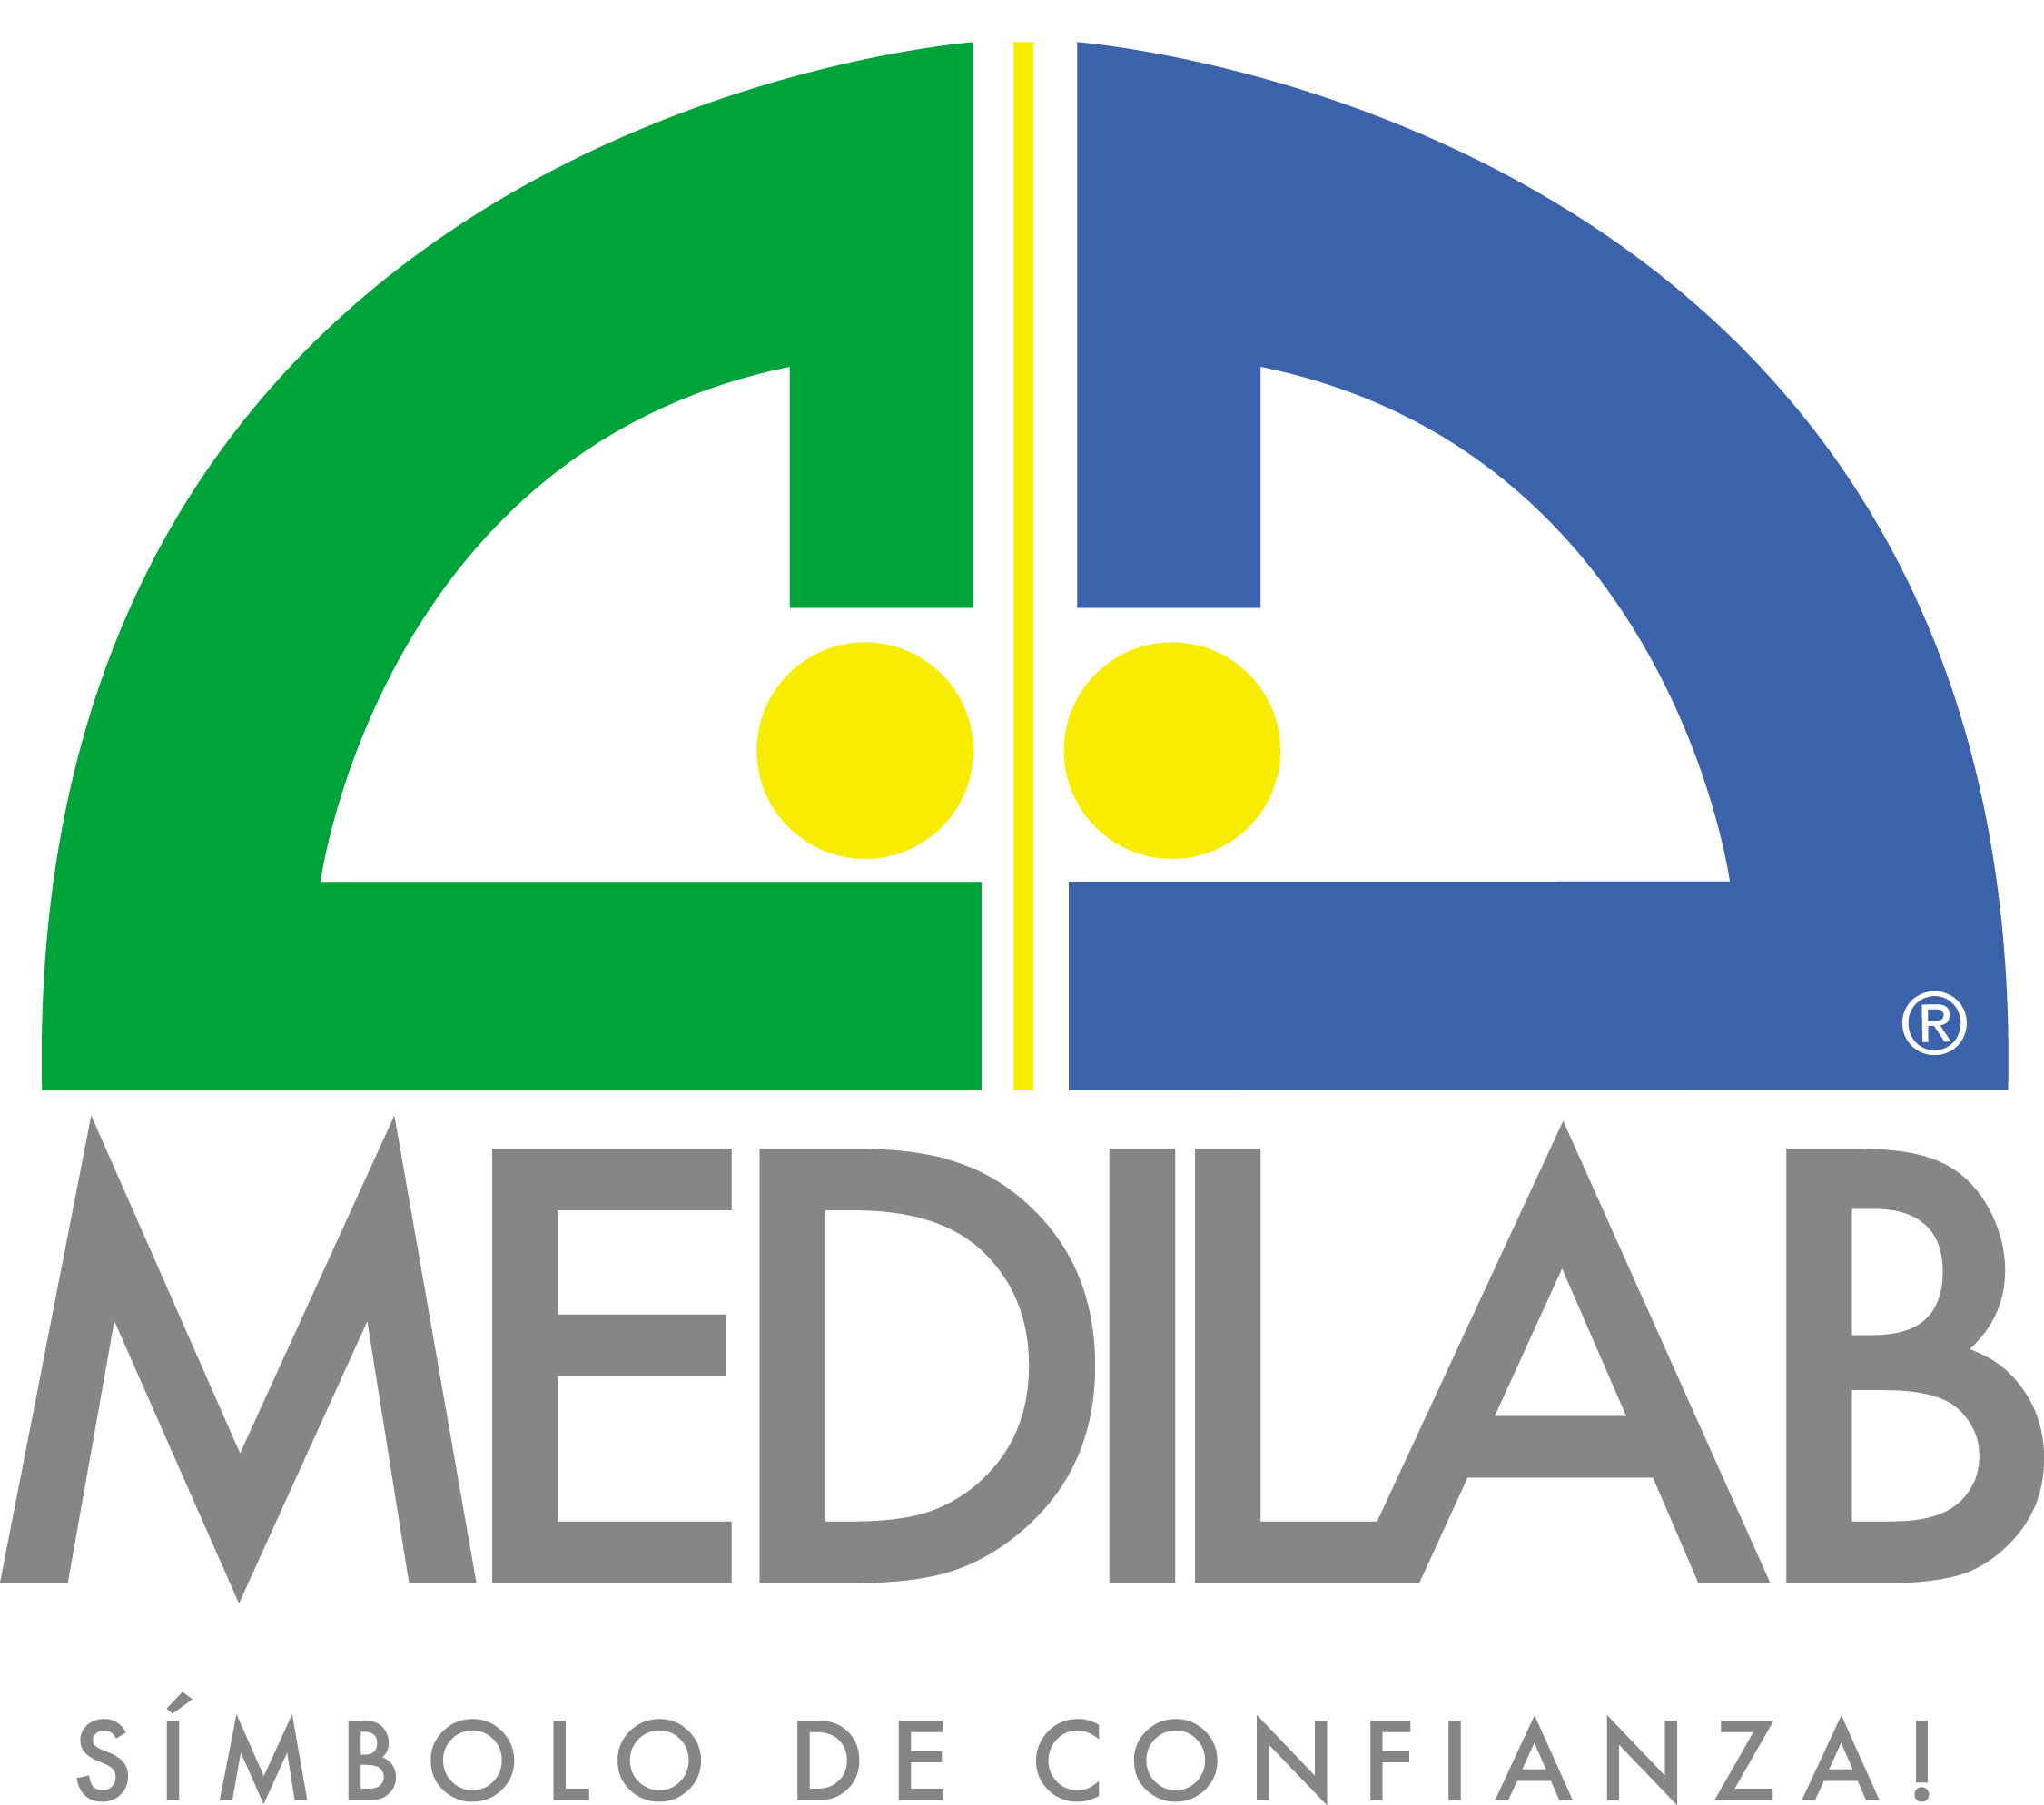 Medilab